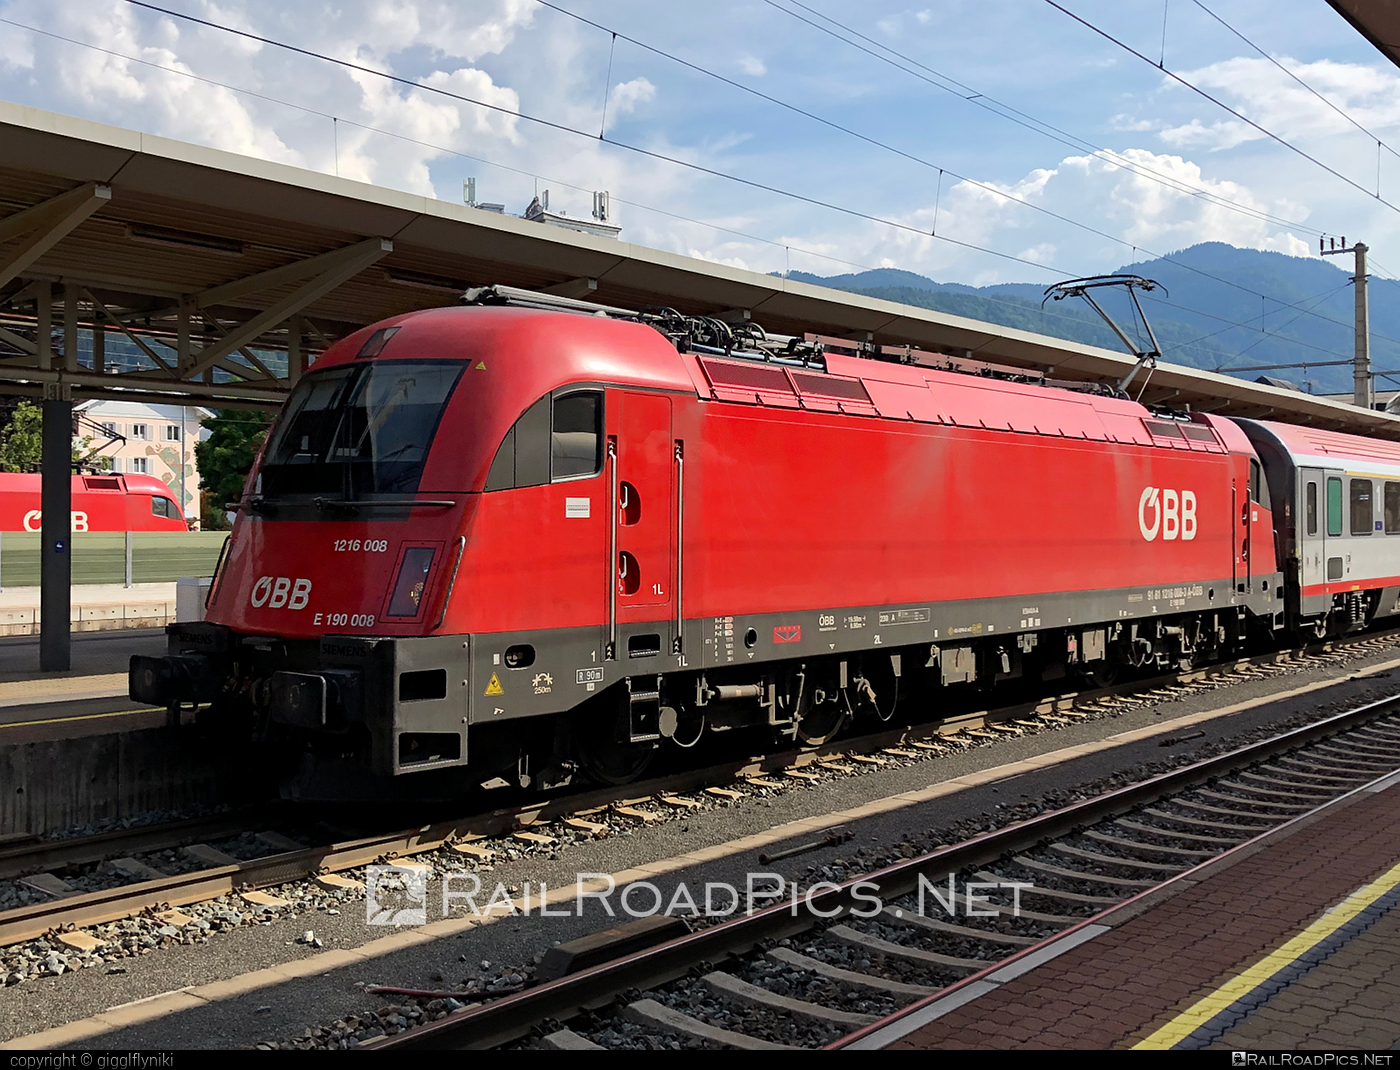 Siemens ES 64 U4 - 1216 008 operated by Österreichische Bundesbahnen #es64 #es64u4 #eurosprinter #obb #osterreichischebundesbahnen #siemens #siemensEs64 #siemensEs64u4 #siemenstaurus #taurus #tauruslocomotive